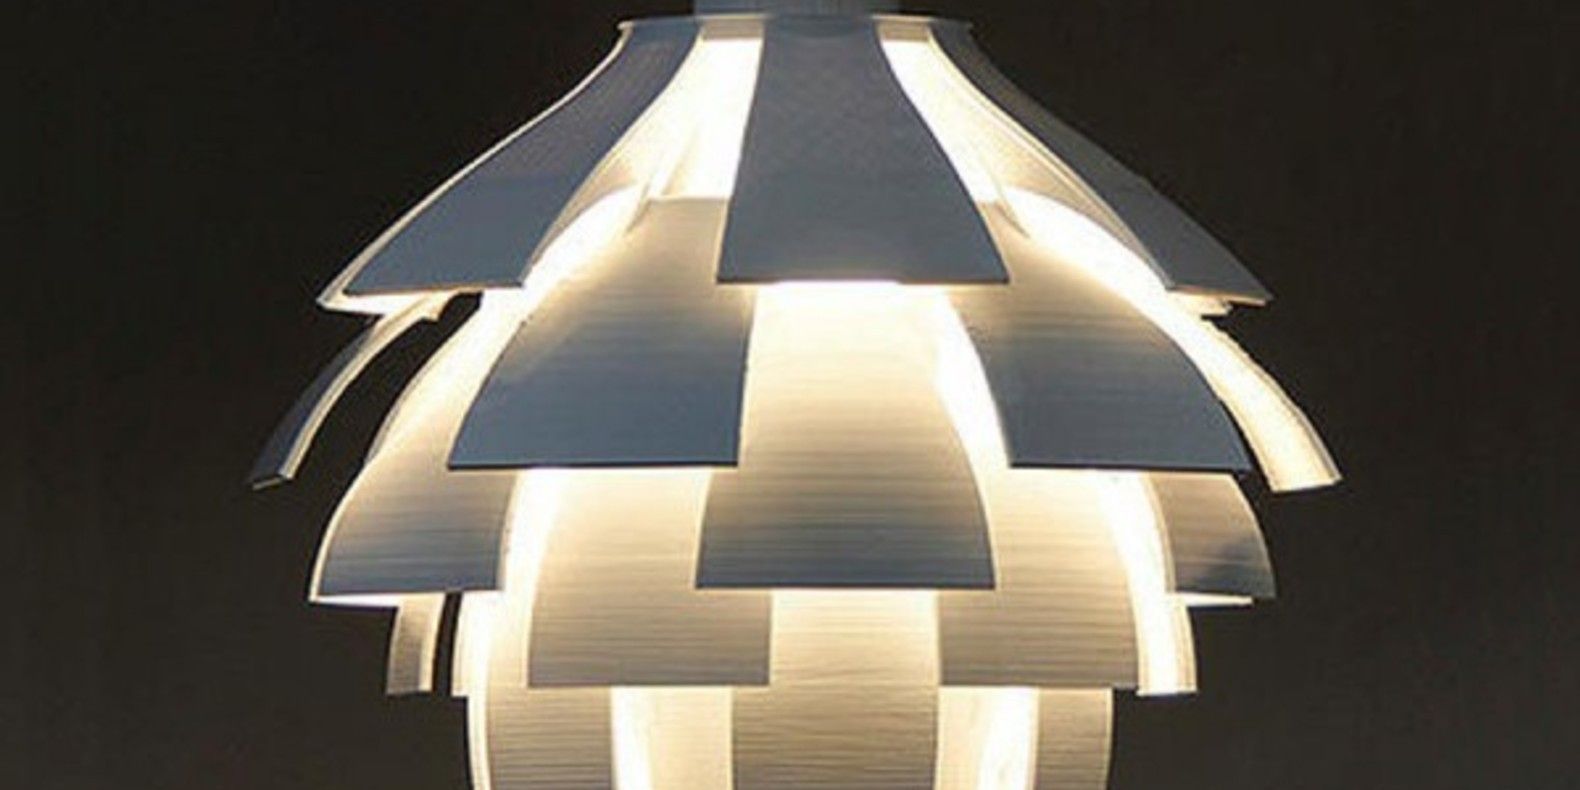 artichoke lamp lampe artichaut suspension abat-jour design gcreate imprimante 3D 3D printer grand format fichier STL cults 3